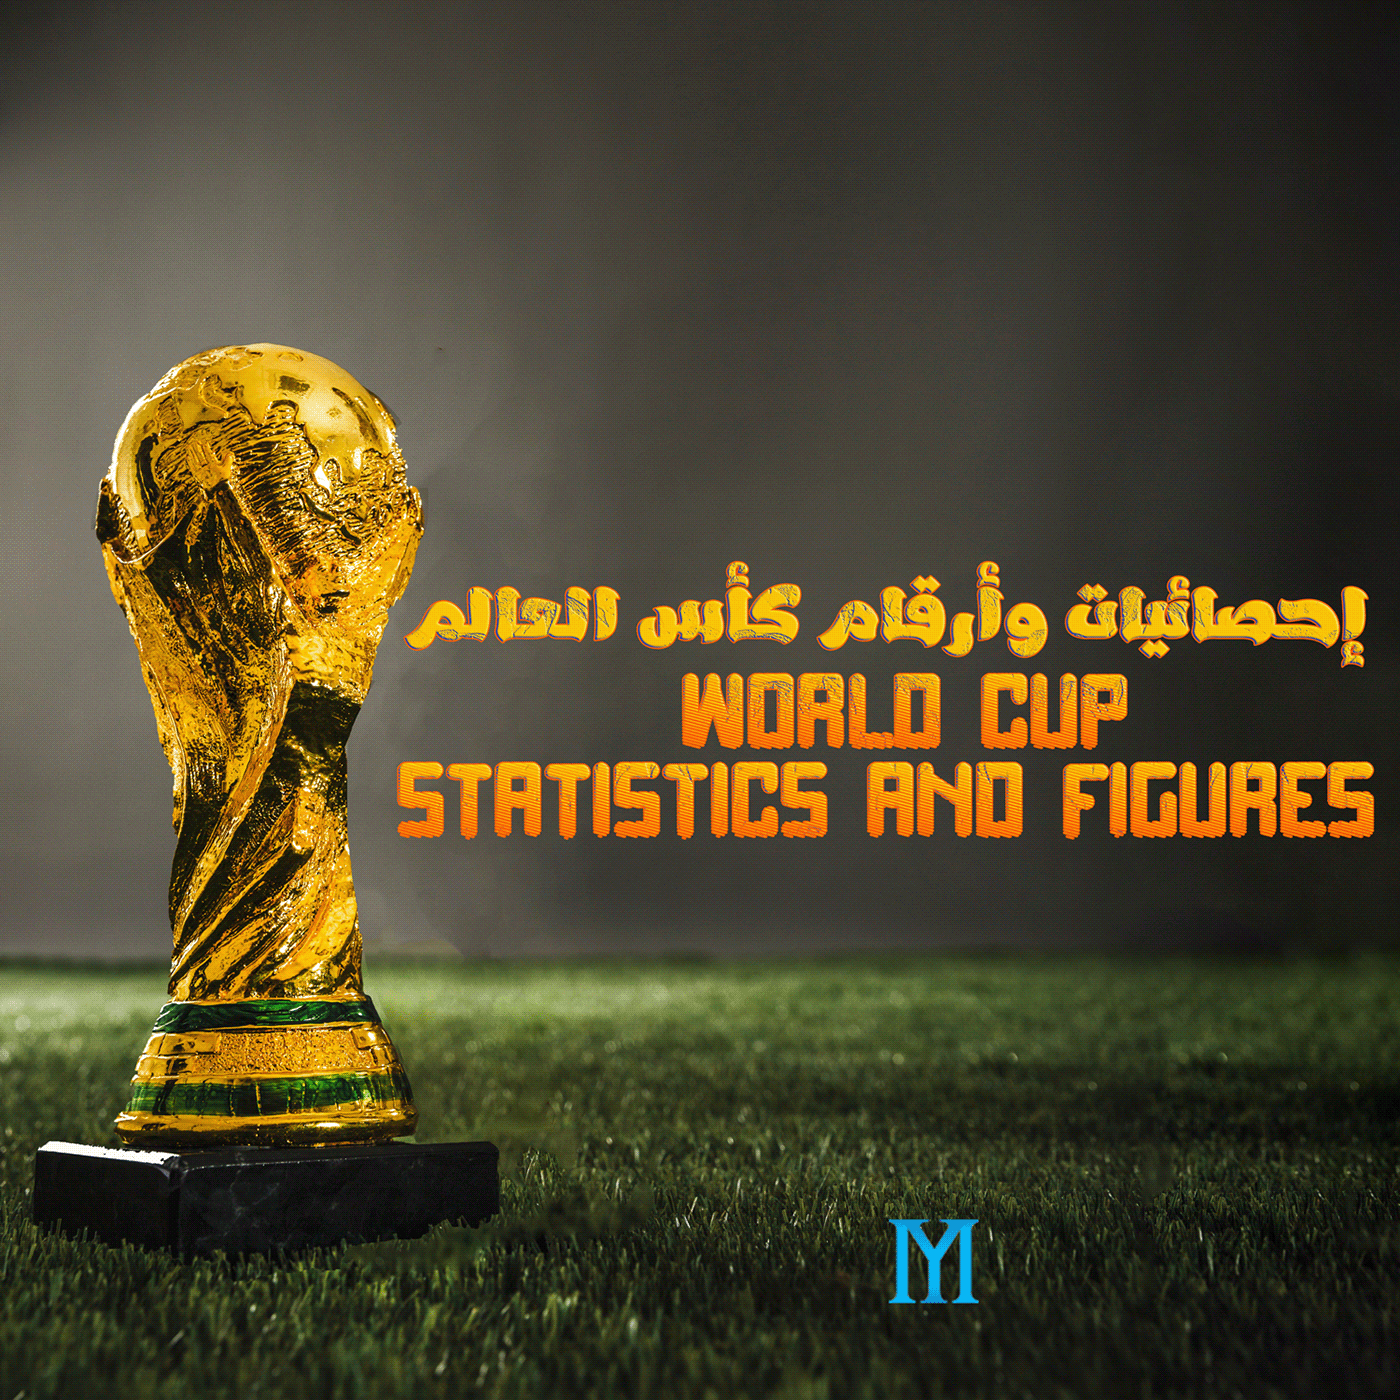 كأس العالم احصائيات  ارقام تصميم world cup graphic photoshop design